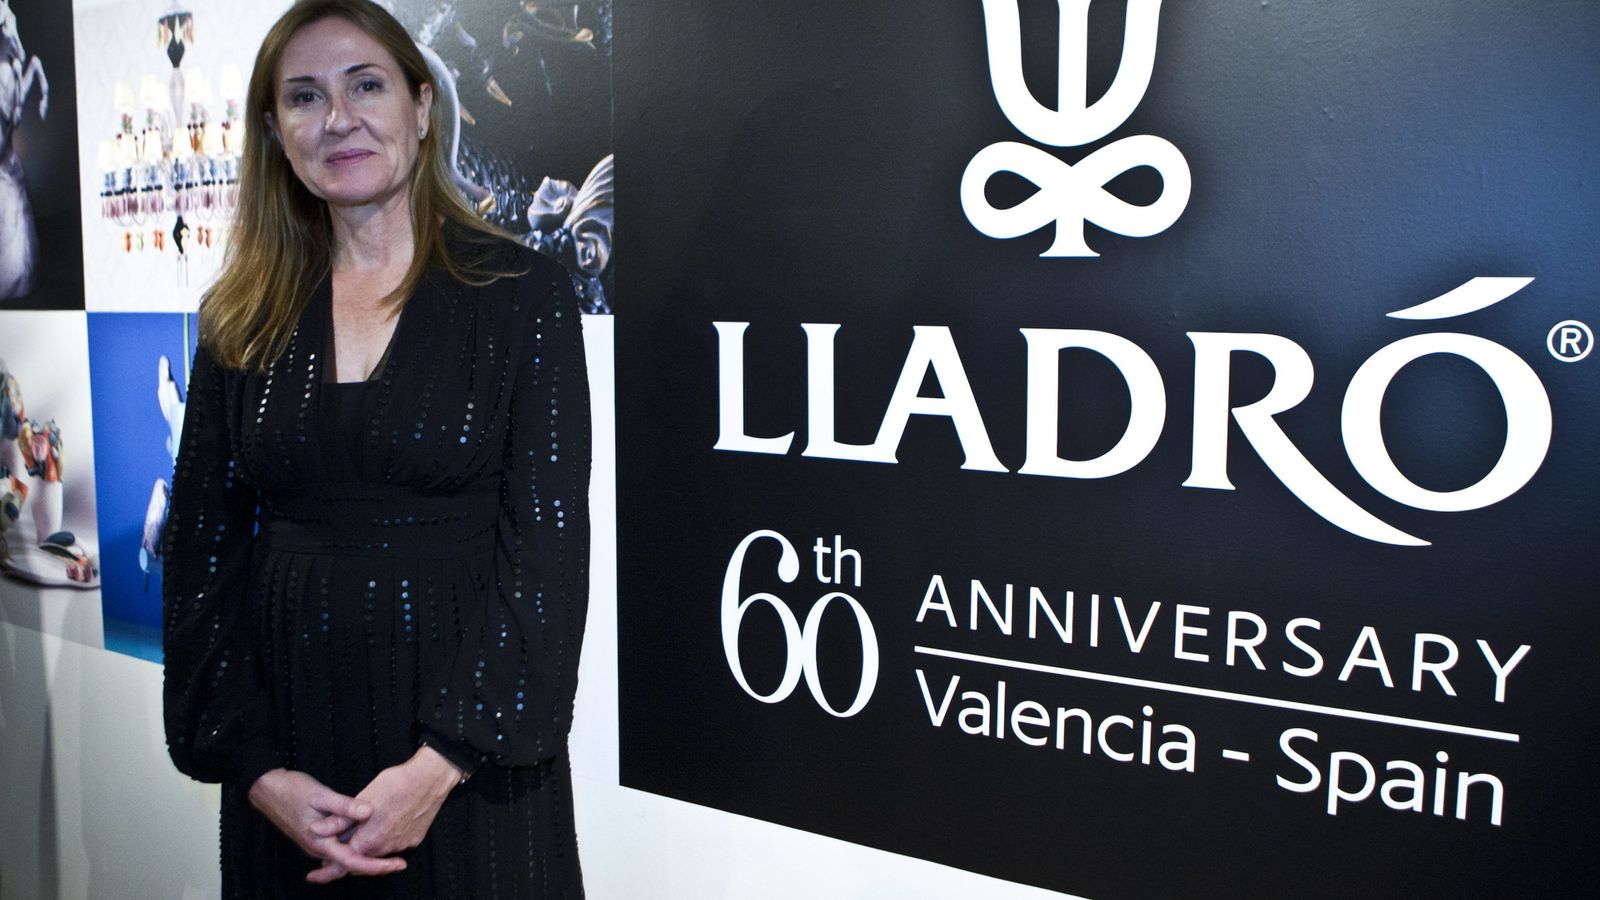 Foto: Rosa Lladró dejó el mes pasado la presidencia de la empresa. (EFE)